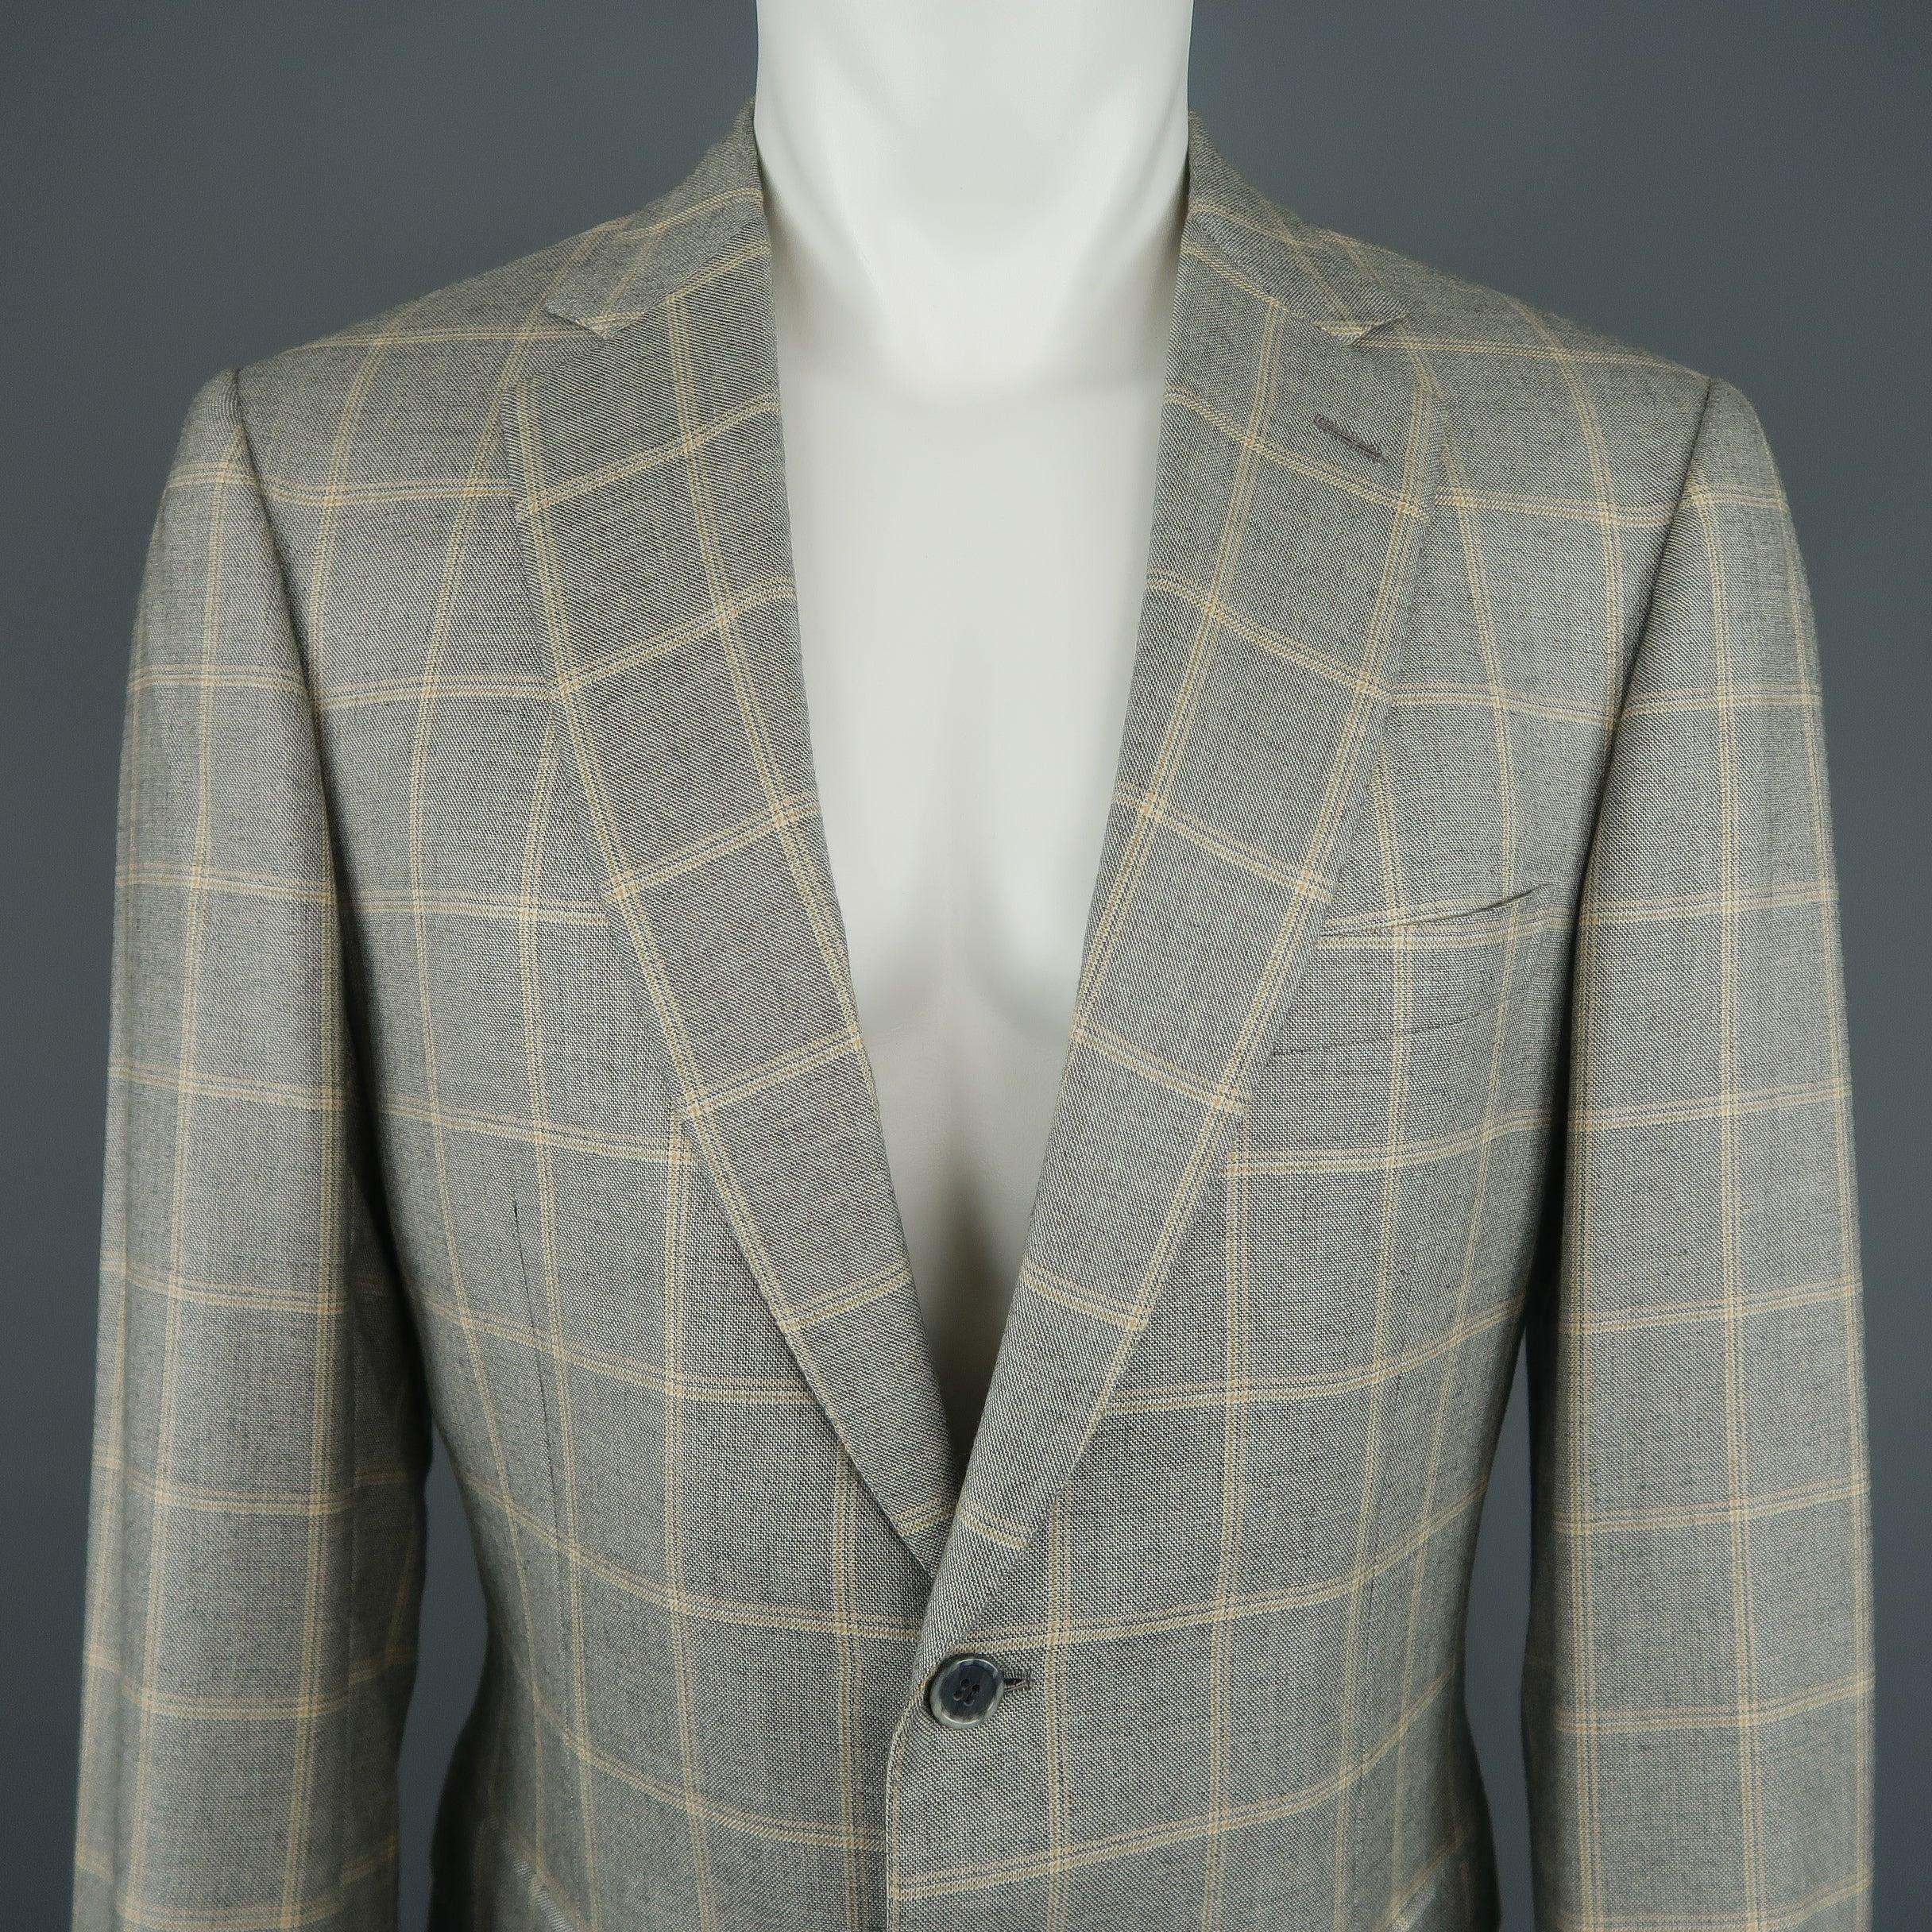 La veste de sport de Brioni est en tissu à carreaux gris clair et or mélangé à de la laine et de la soie. Elle est dotée d'une fermeture à deux boutons, d'un revers échancré et de poignets à boutons fonctionnels. Fabriqué en Italie. Excellent état.